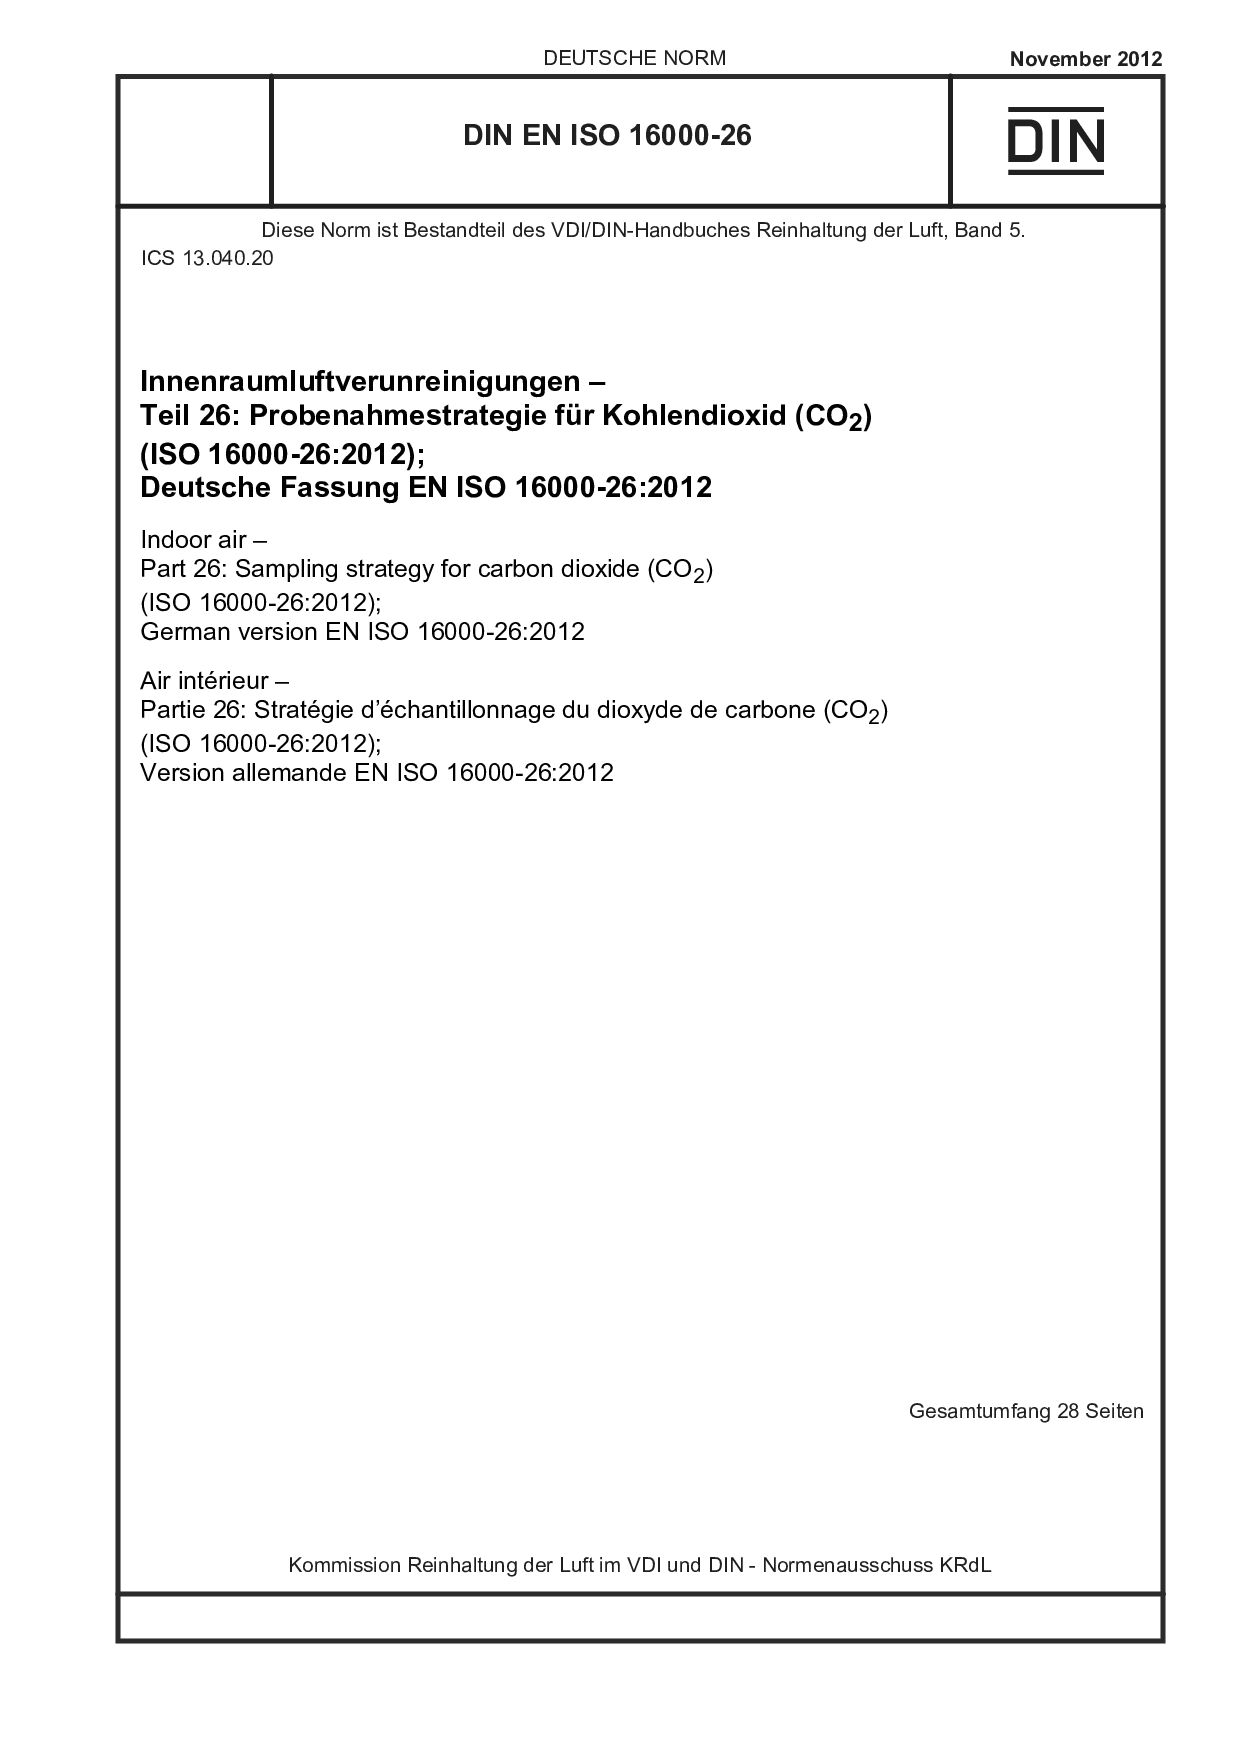 DIN EN ISO 16000-26:2012